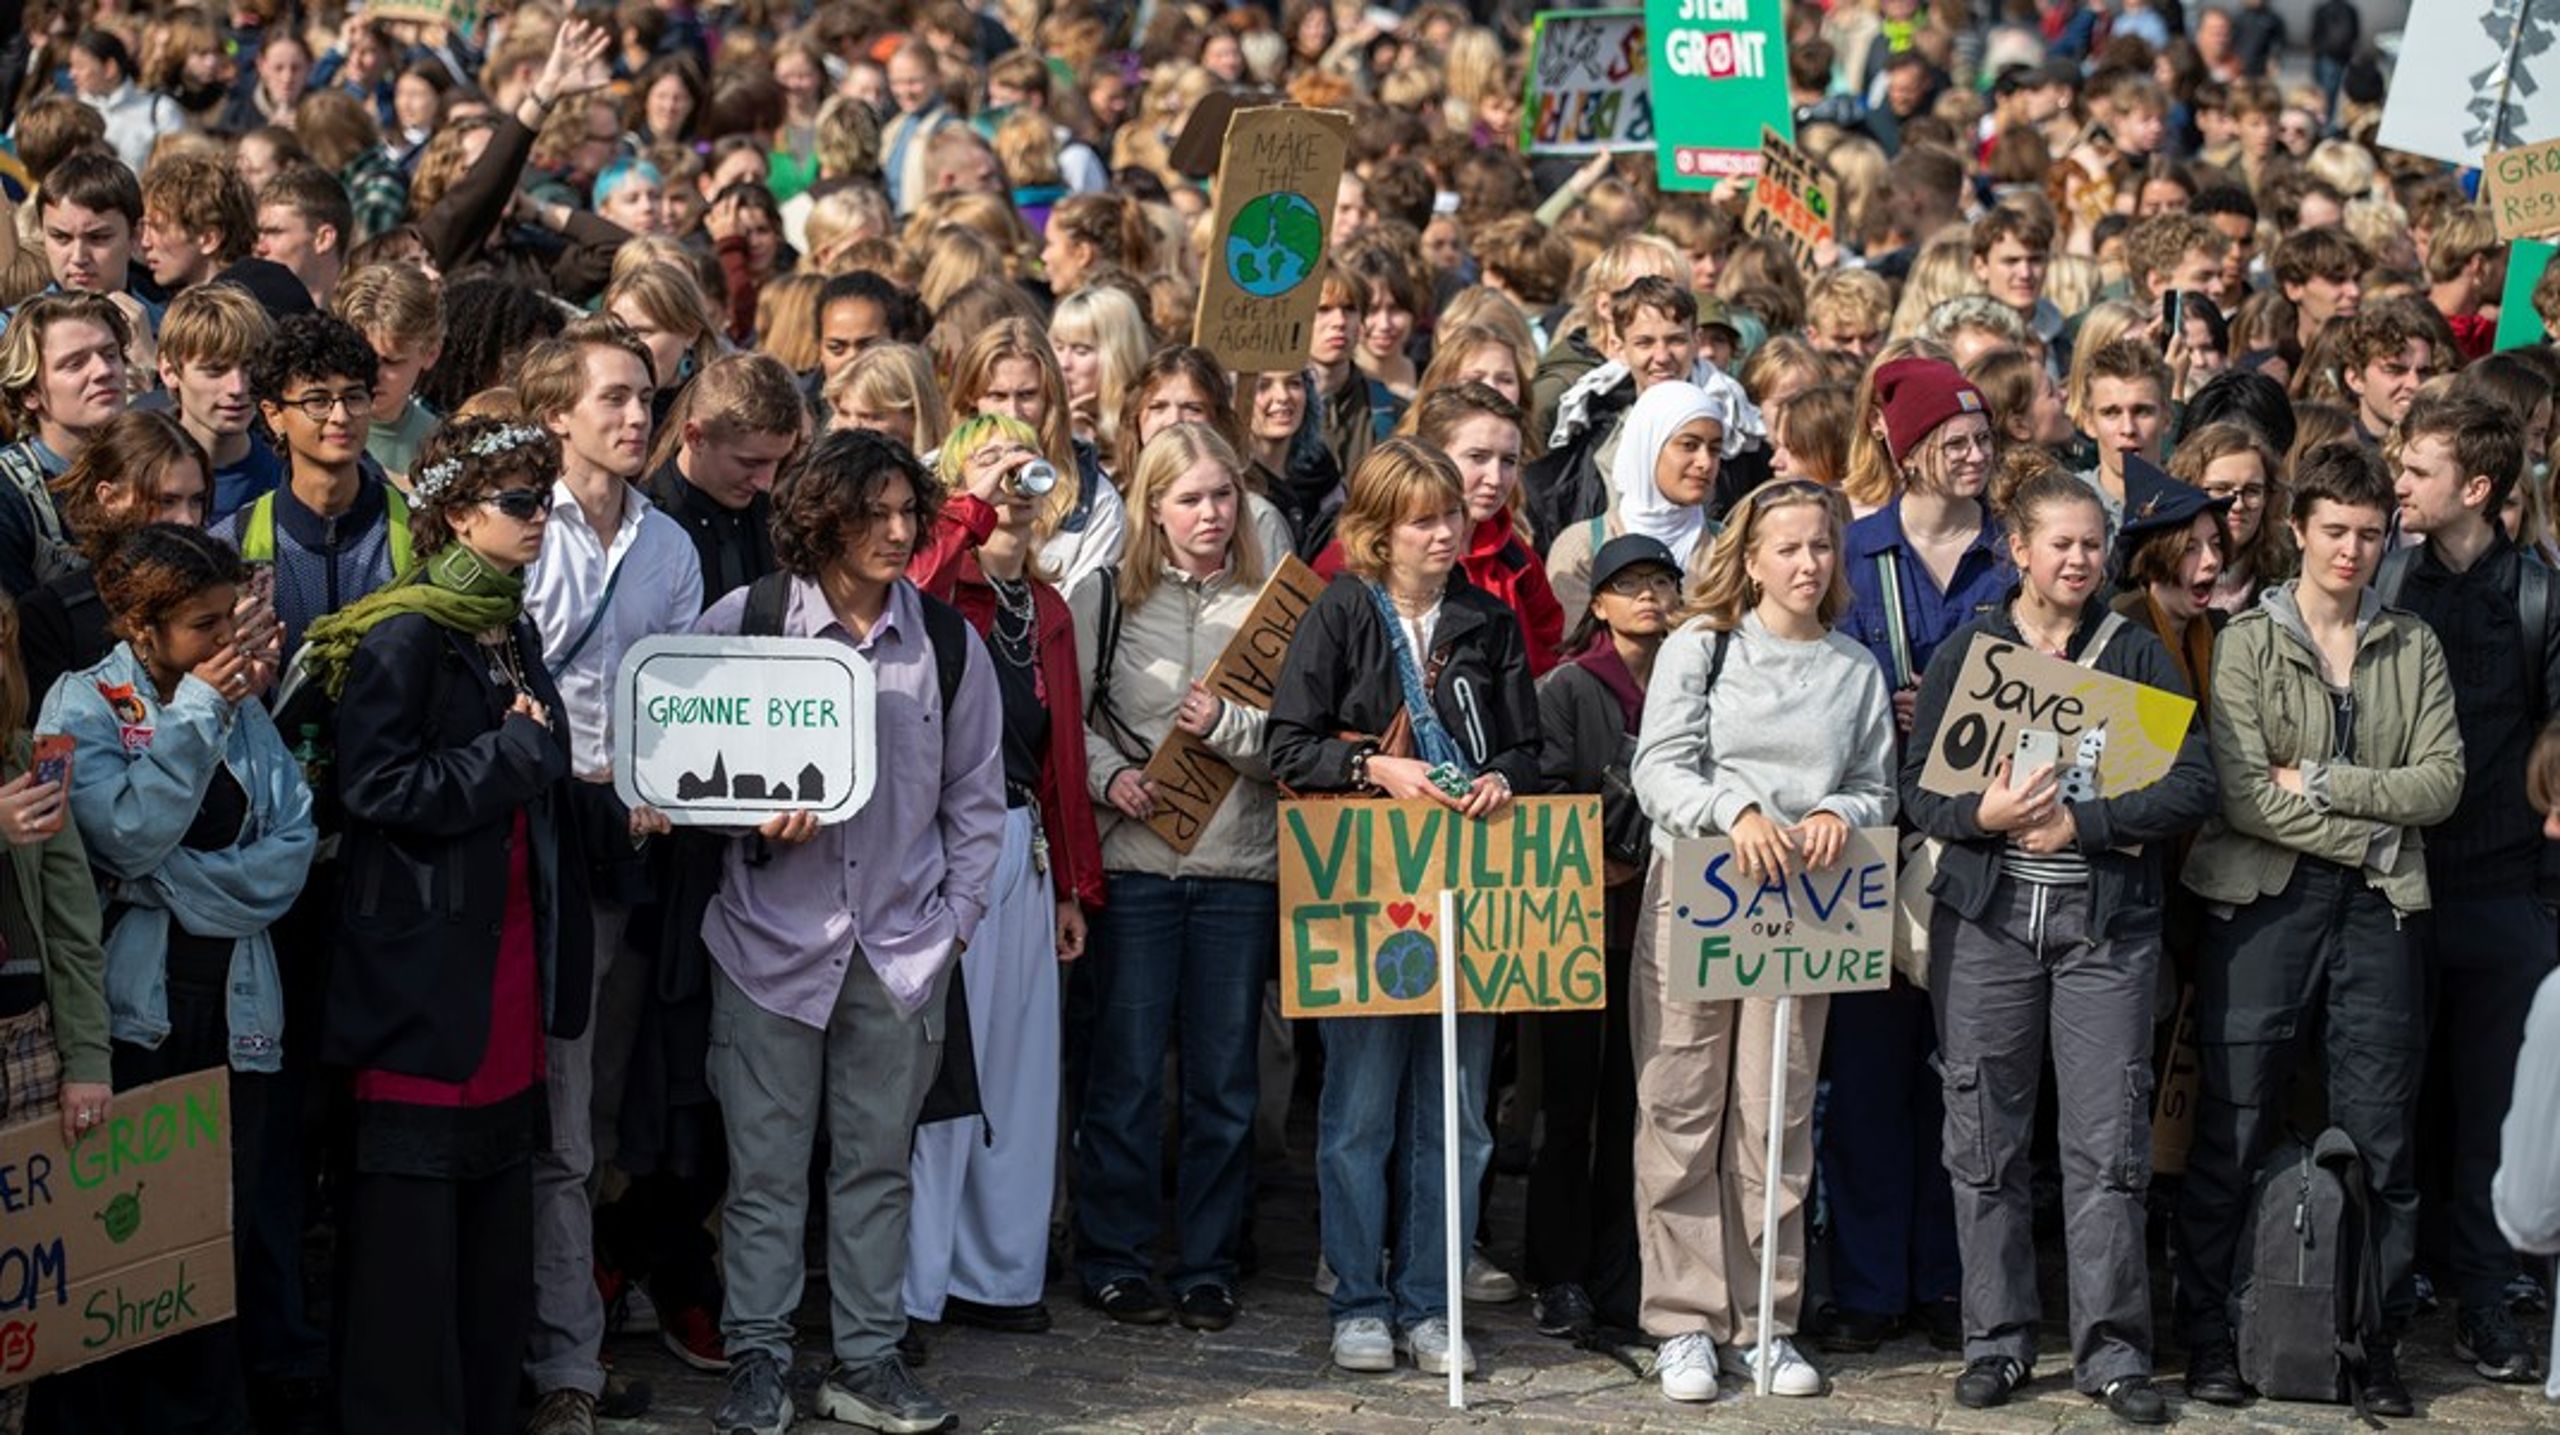 Tusinder af unge var forrige fredag mødt op på Christiansborg Slotsplads for at kræve konkret klimahandling. Men det blev ignoreret af langt de fleste store medier, skriver Caroline Bessermann.